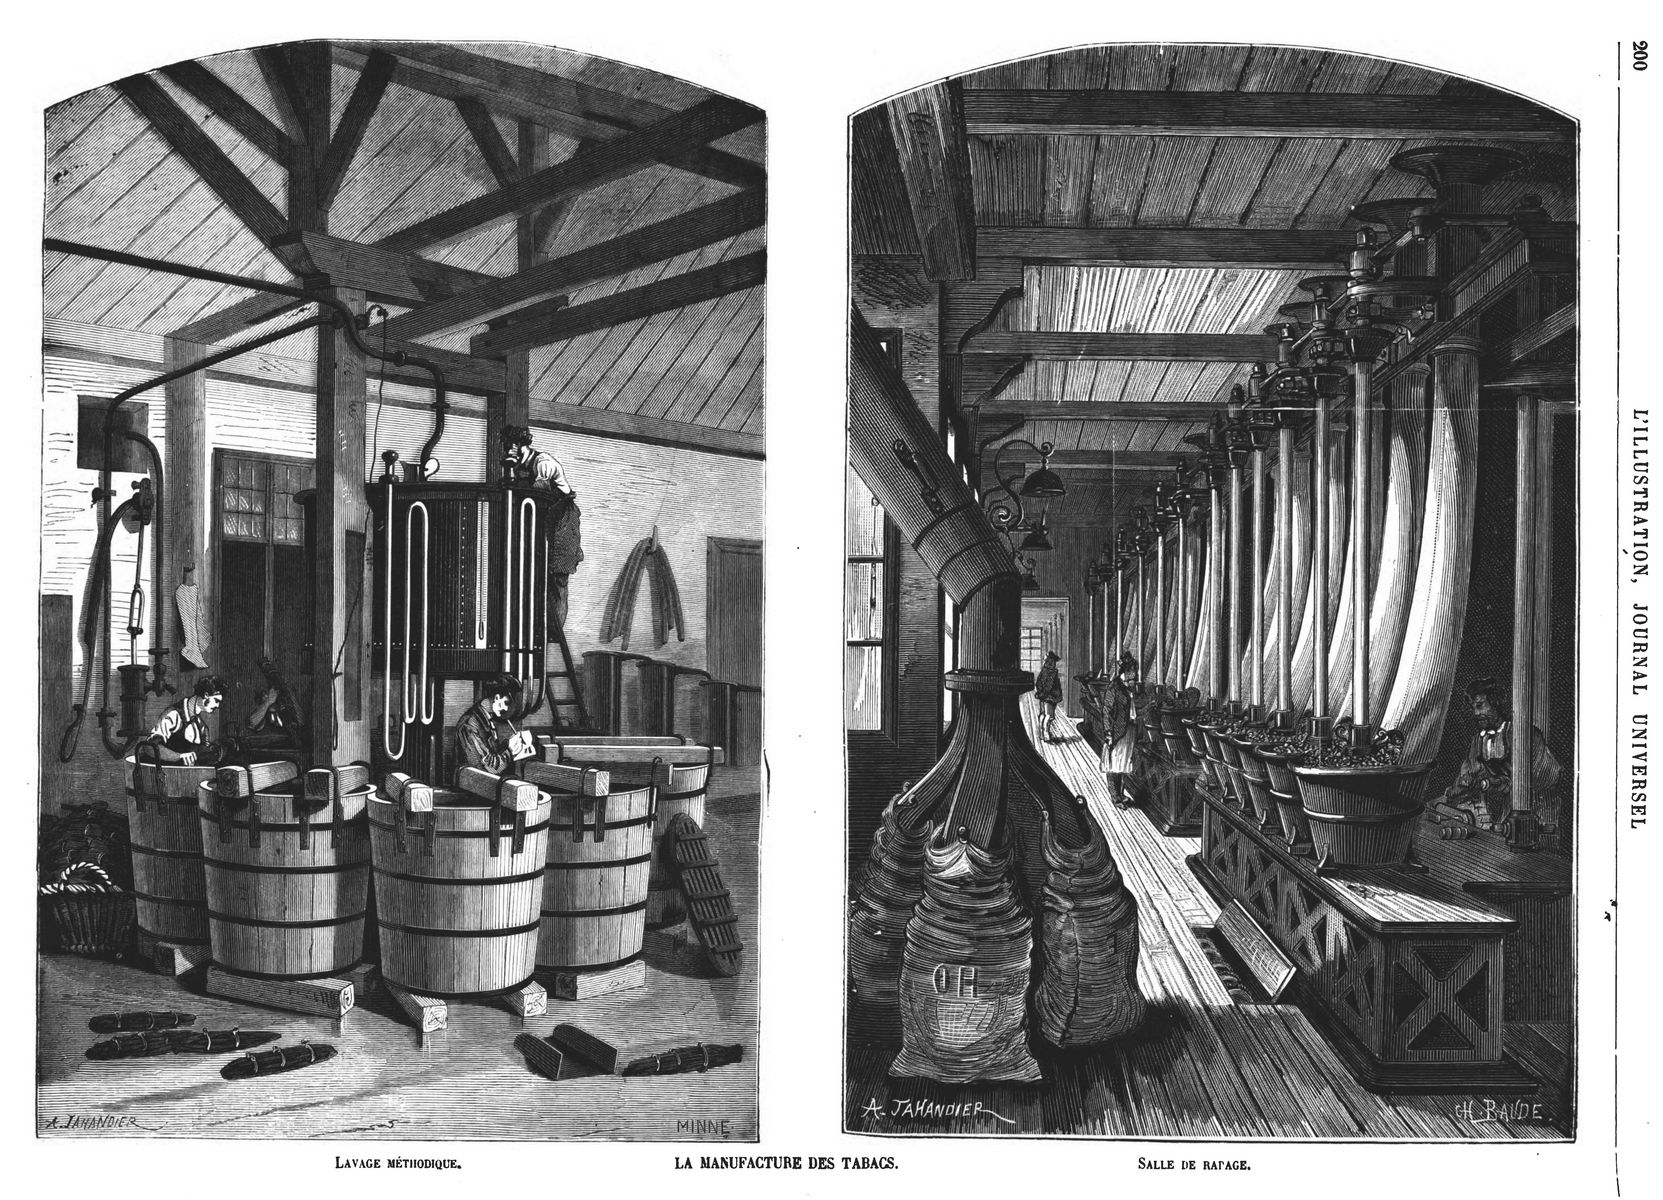 La Manufacture des tabacs : lavage méthodique ; Gravure 1874 — Salle de repassage ; — Presses de lavage. Gravure 1874